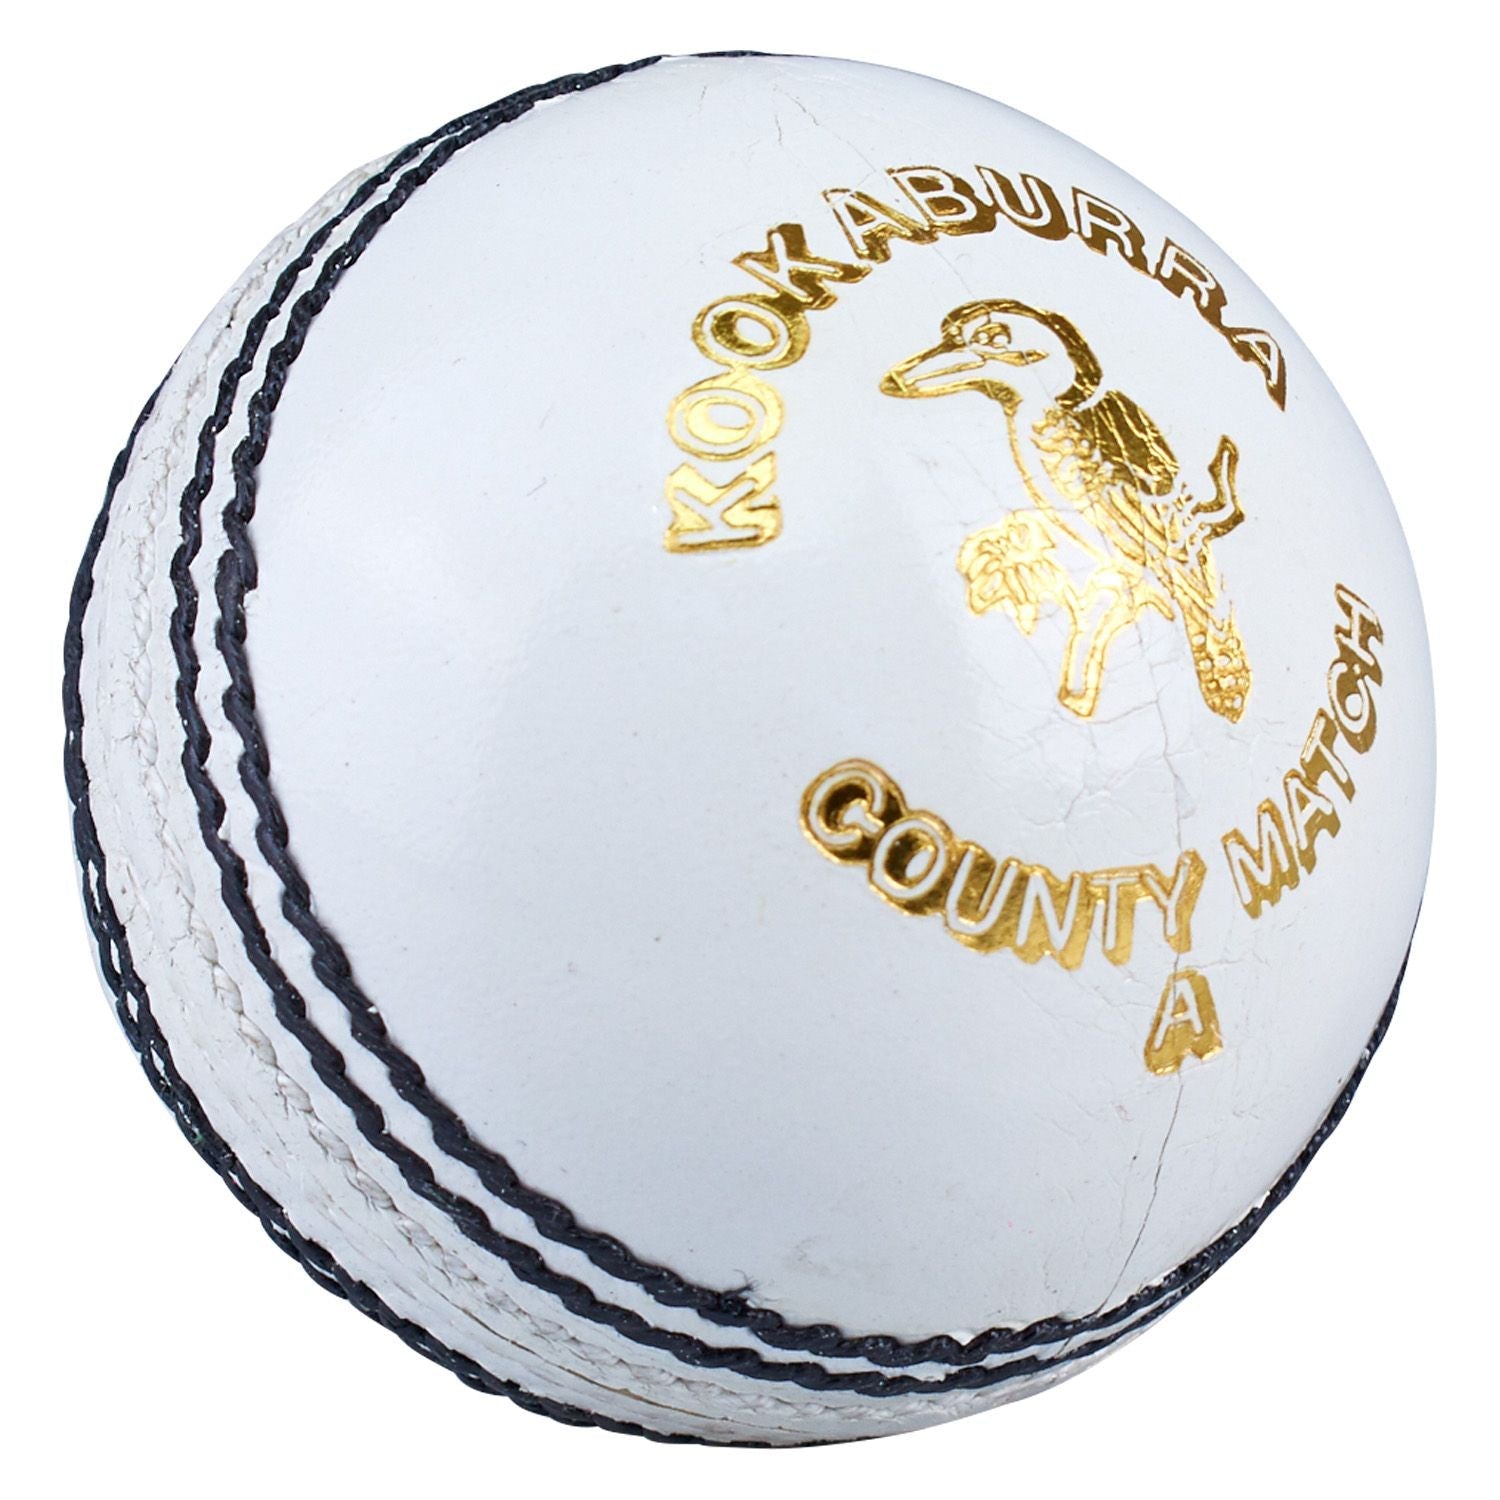 Kookaburra Kb County League White Cricket Ball-Bruntsfield Sports Online